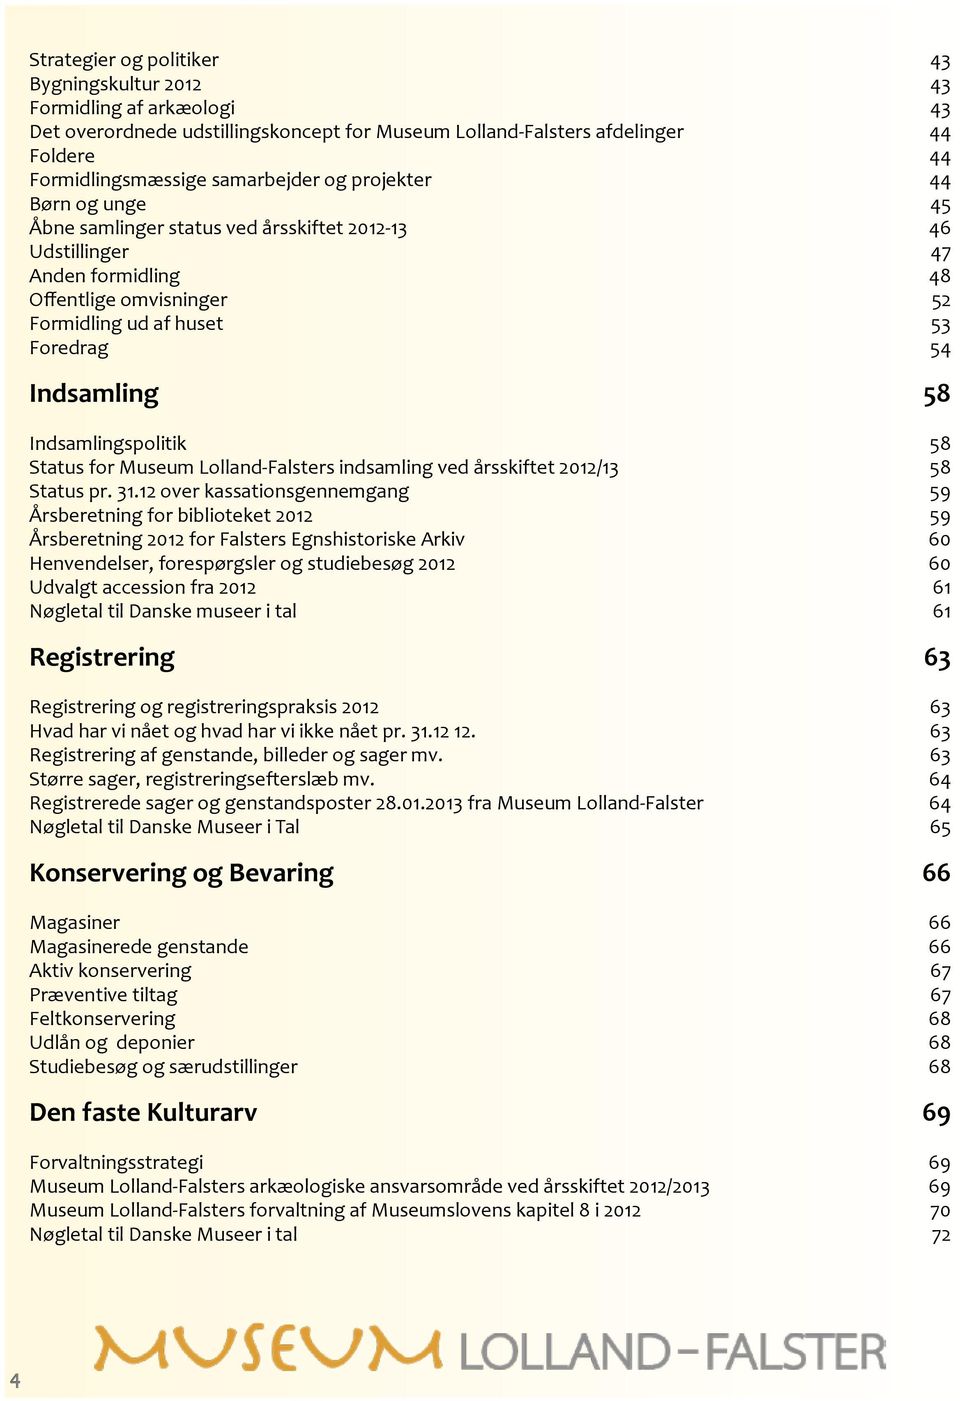 Indsamlingspolitik 58 Status for Museum Lolland-Falsters indsamling ved årsskiftet 2012/13 58 Status pr. 31.